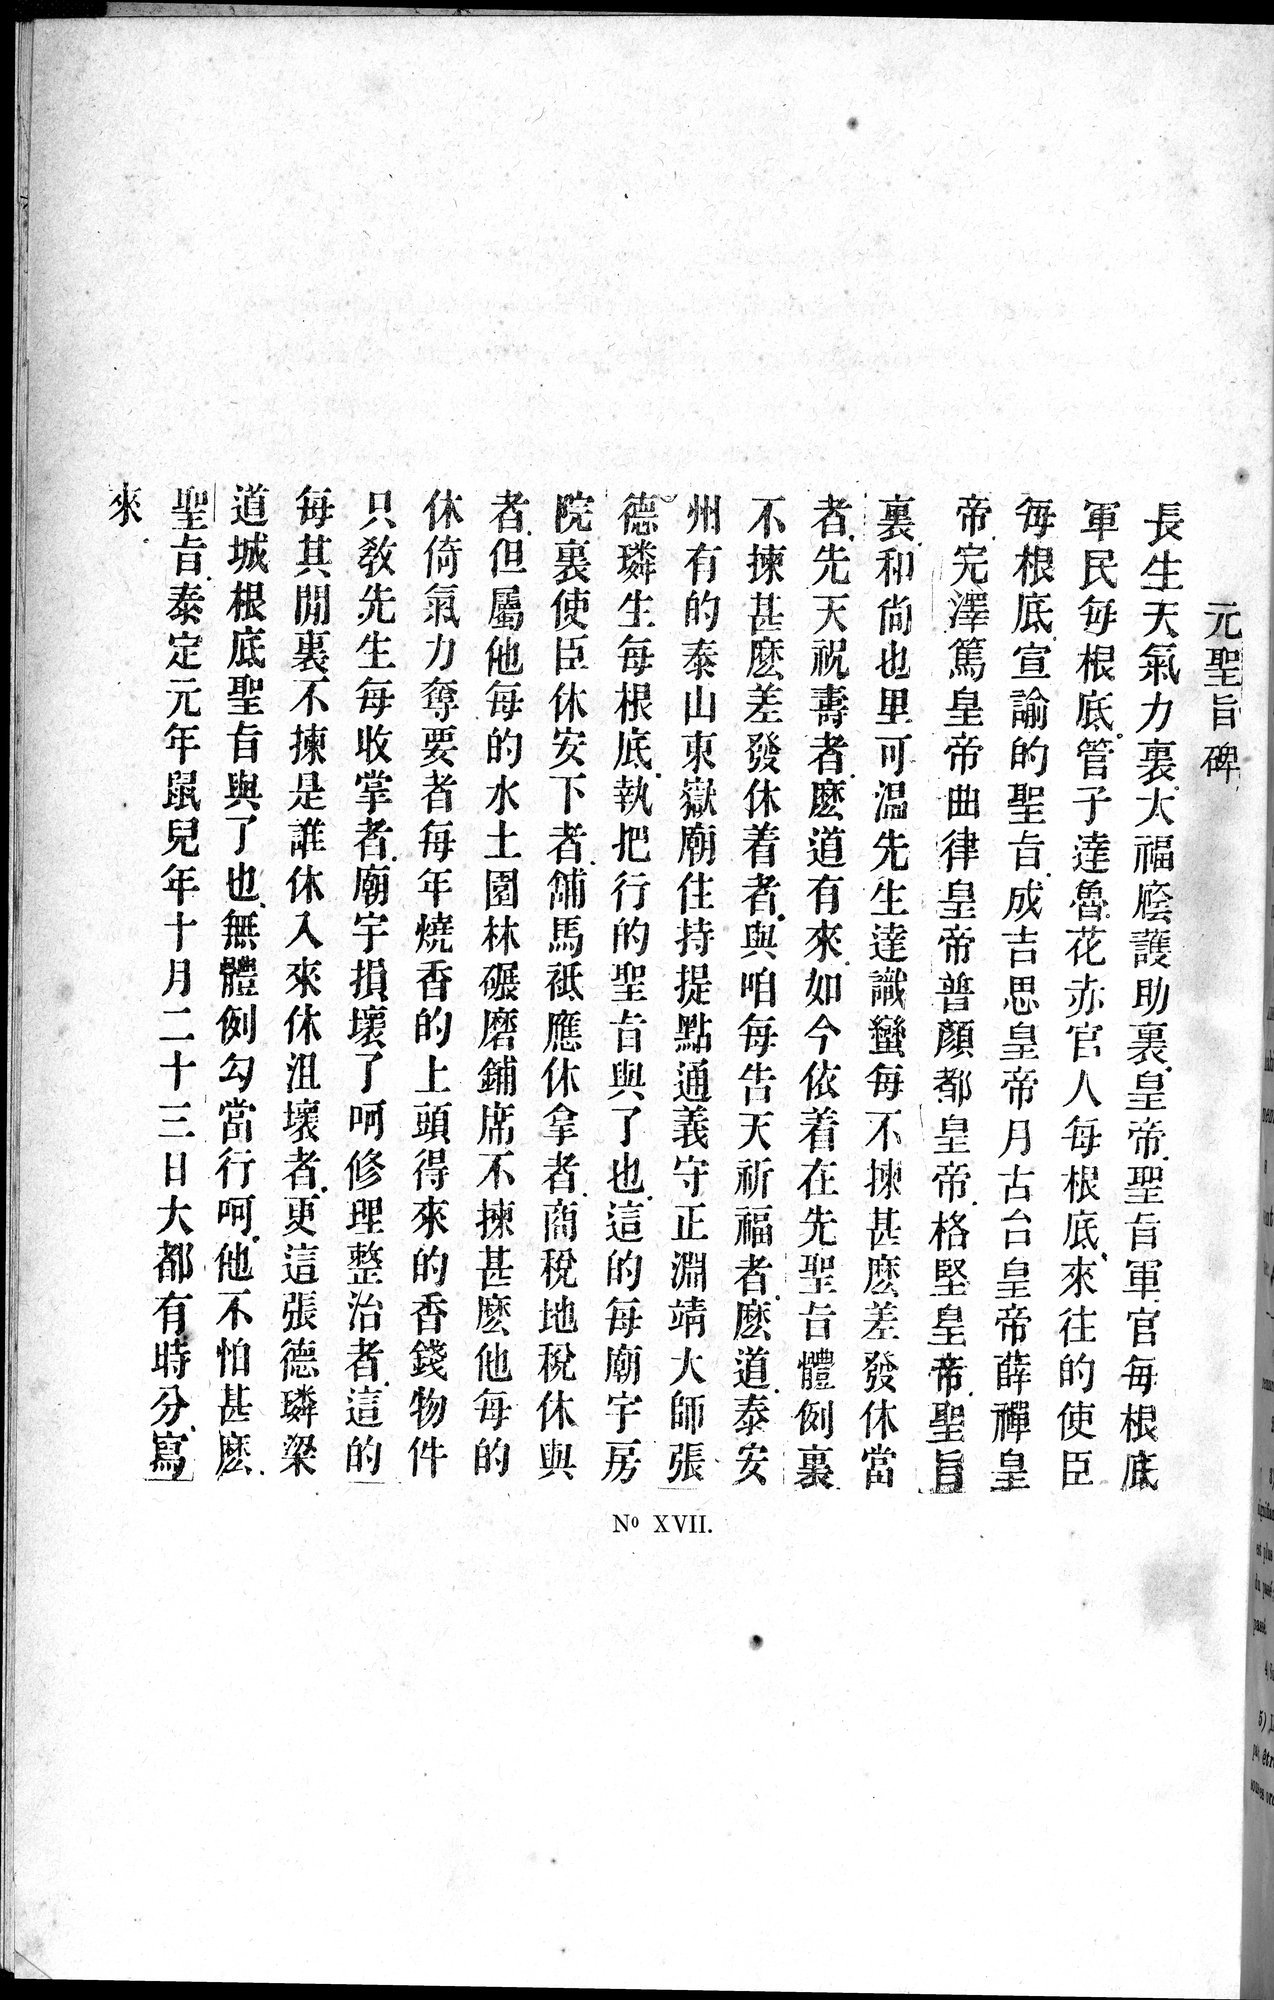 Inscriptions et pièces de Chancellerie Chinoises de l'époque mongol : vol.1 / Page 160 (Grayscale High Resolution Image)